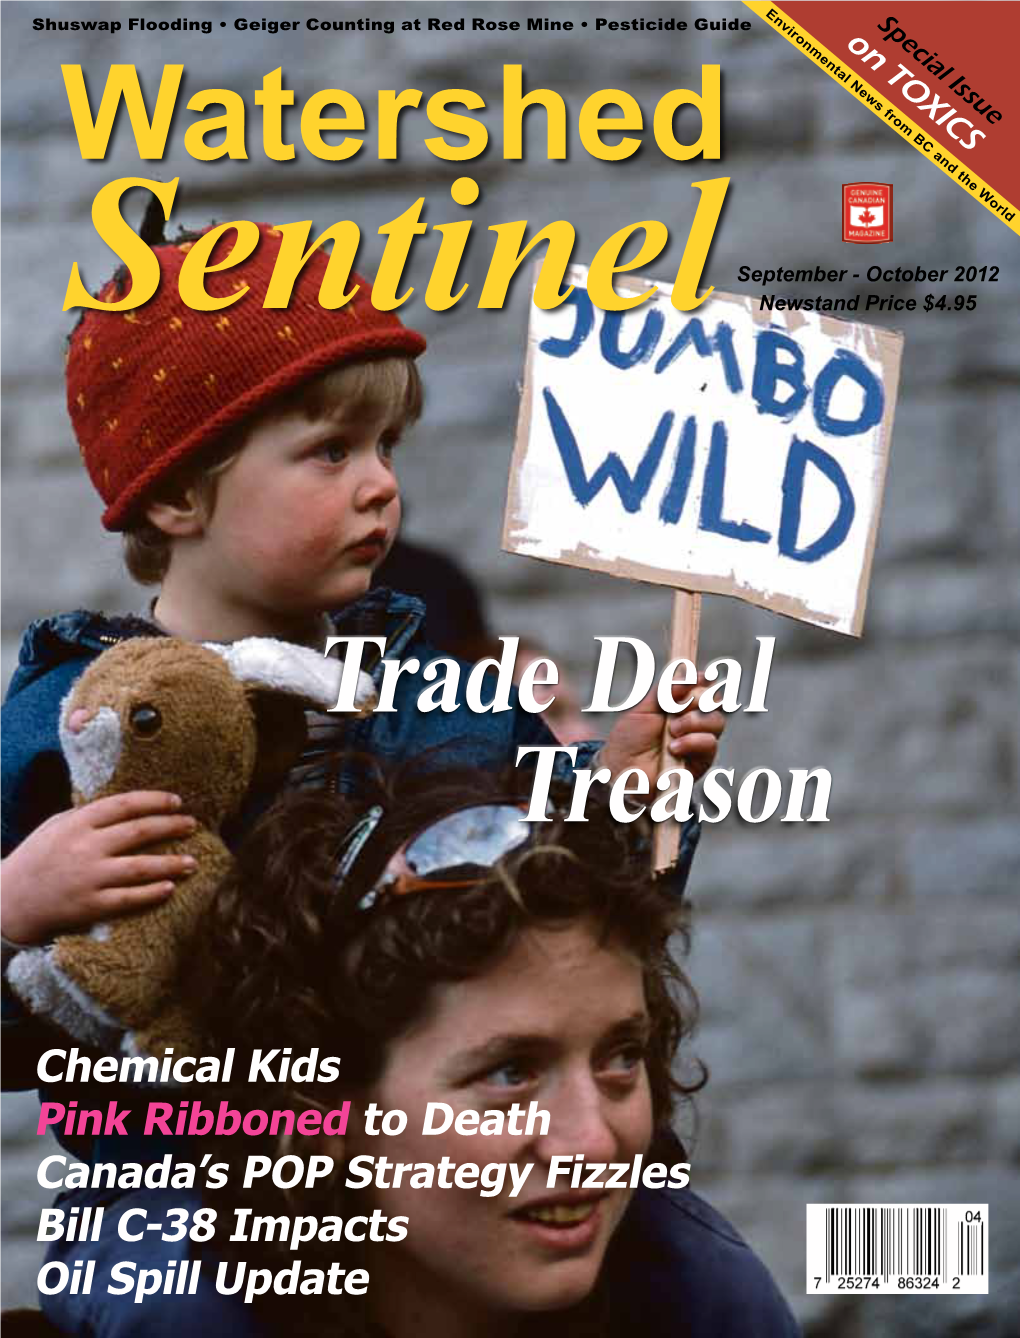 Trade Deal Treason